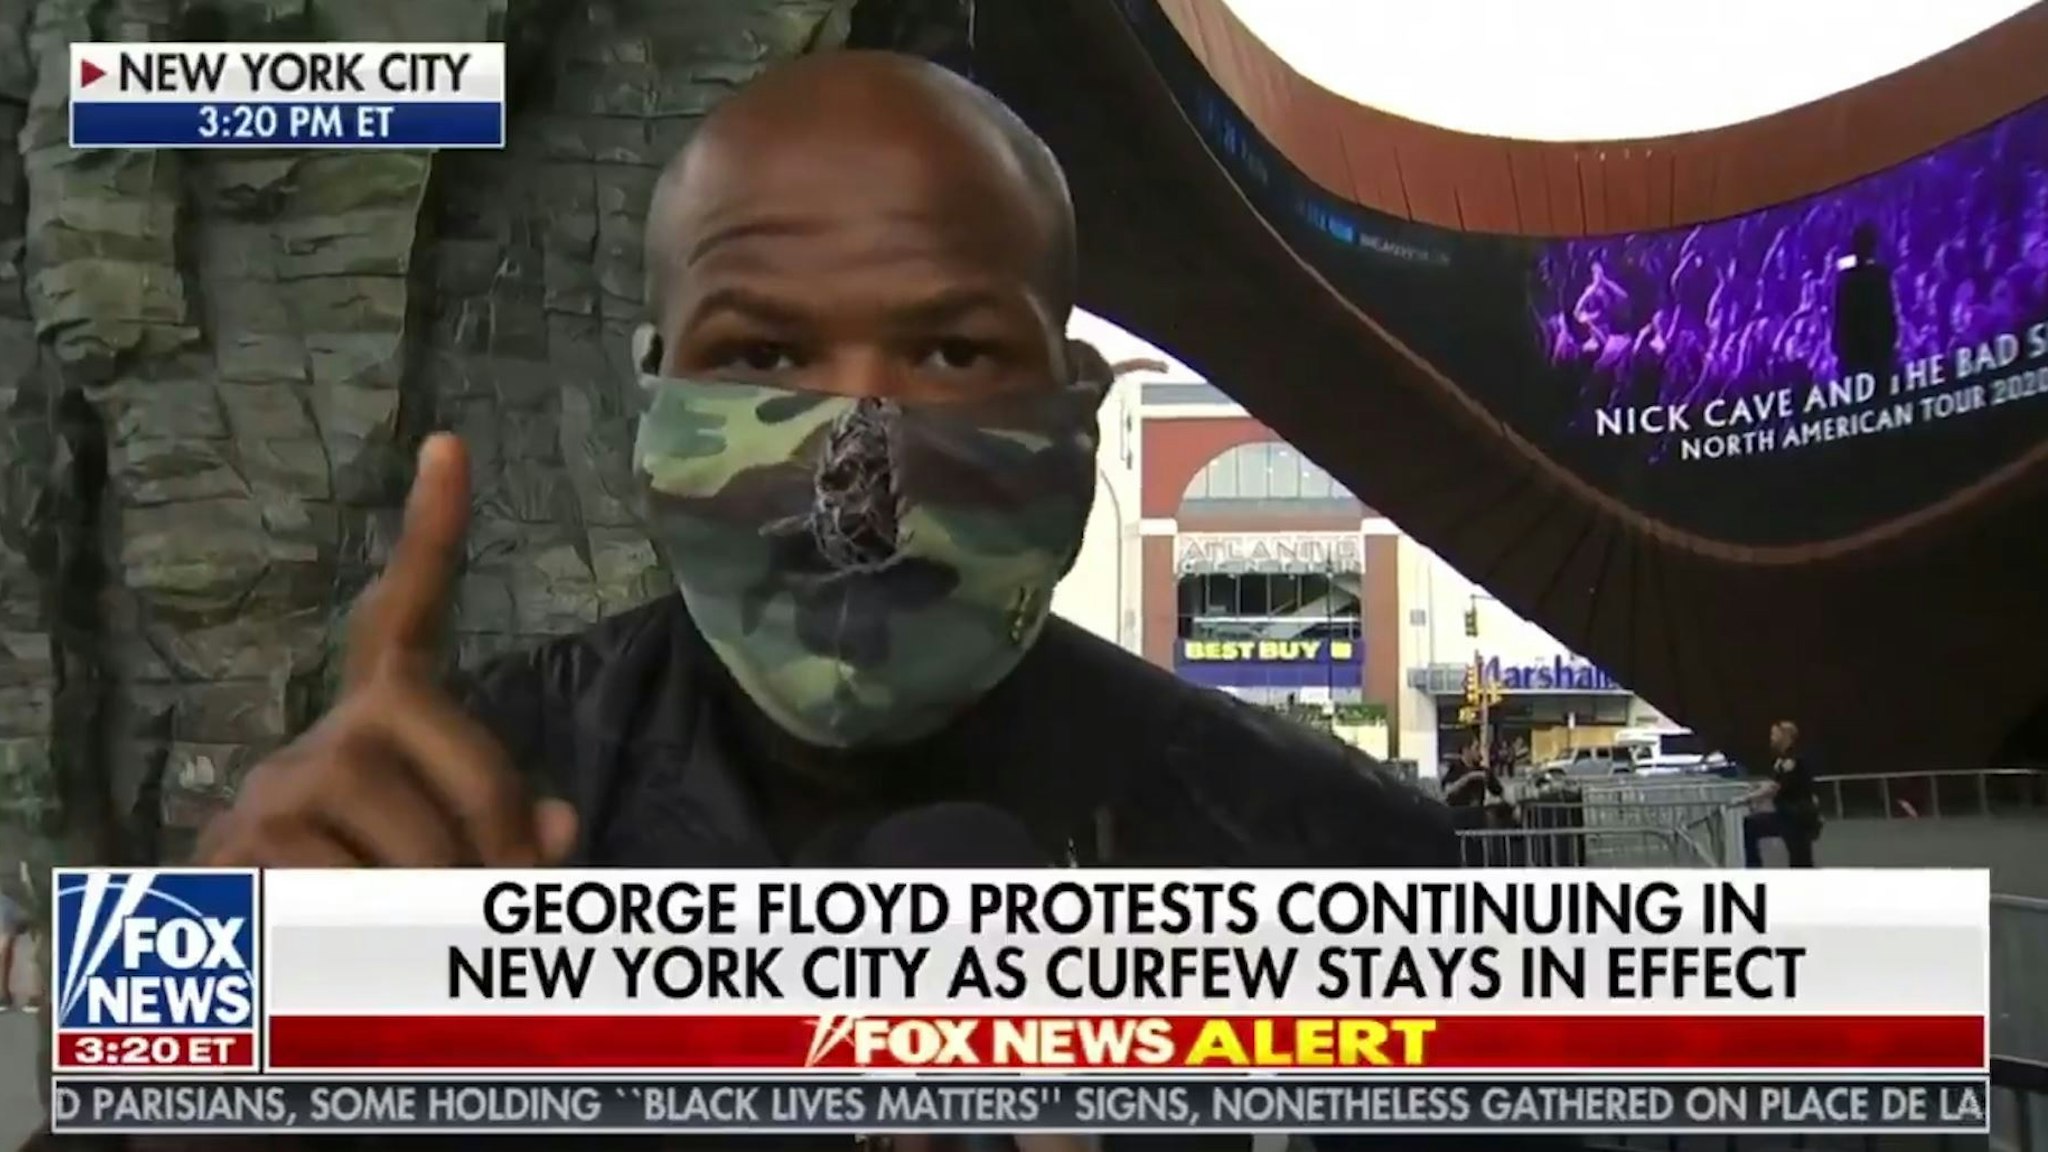 Man On Fox News